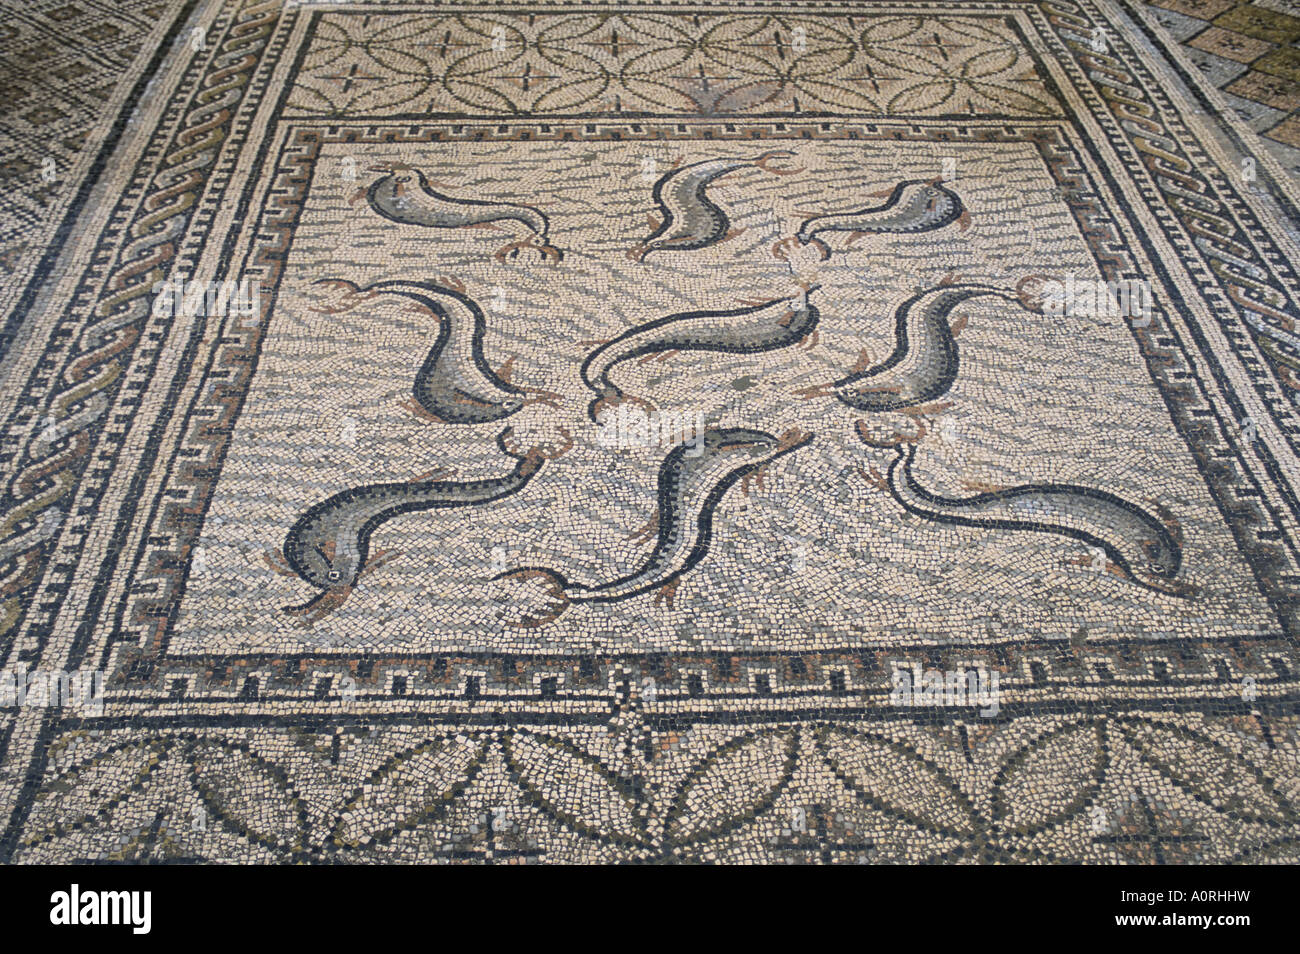 Sol de mosaïque site archéologique romain de Volubilis Site du patrimoine mondial de l'Afrique Afrique du Nord Maroc Banque D'Images